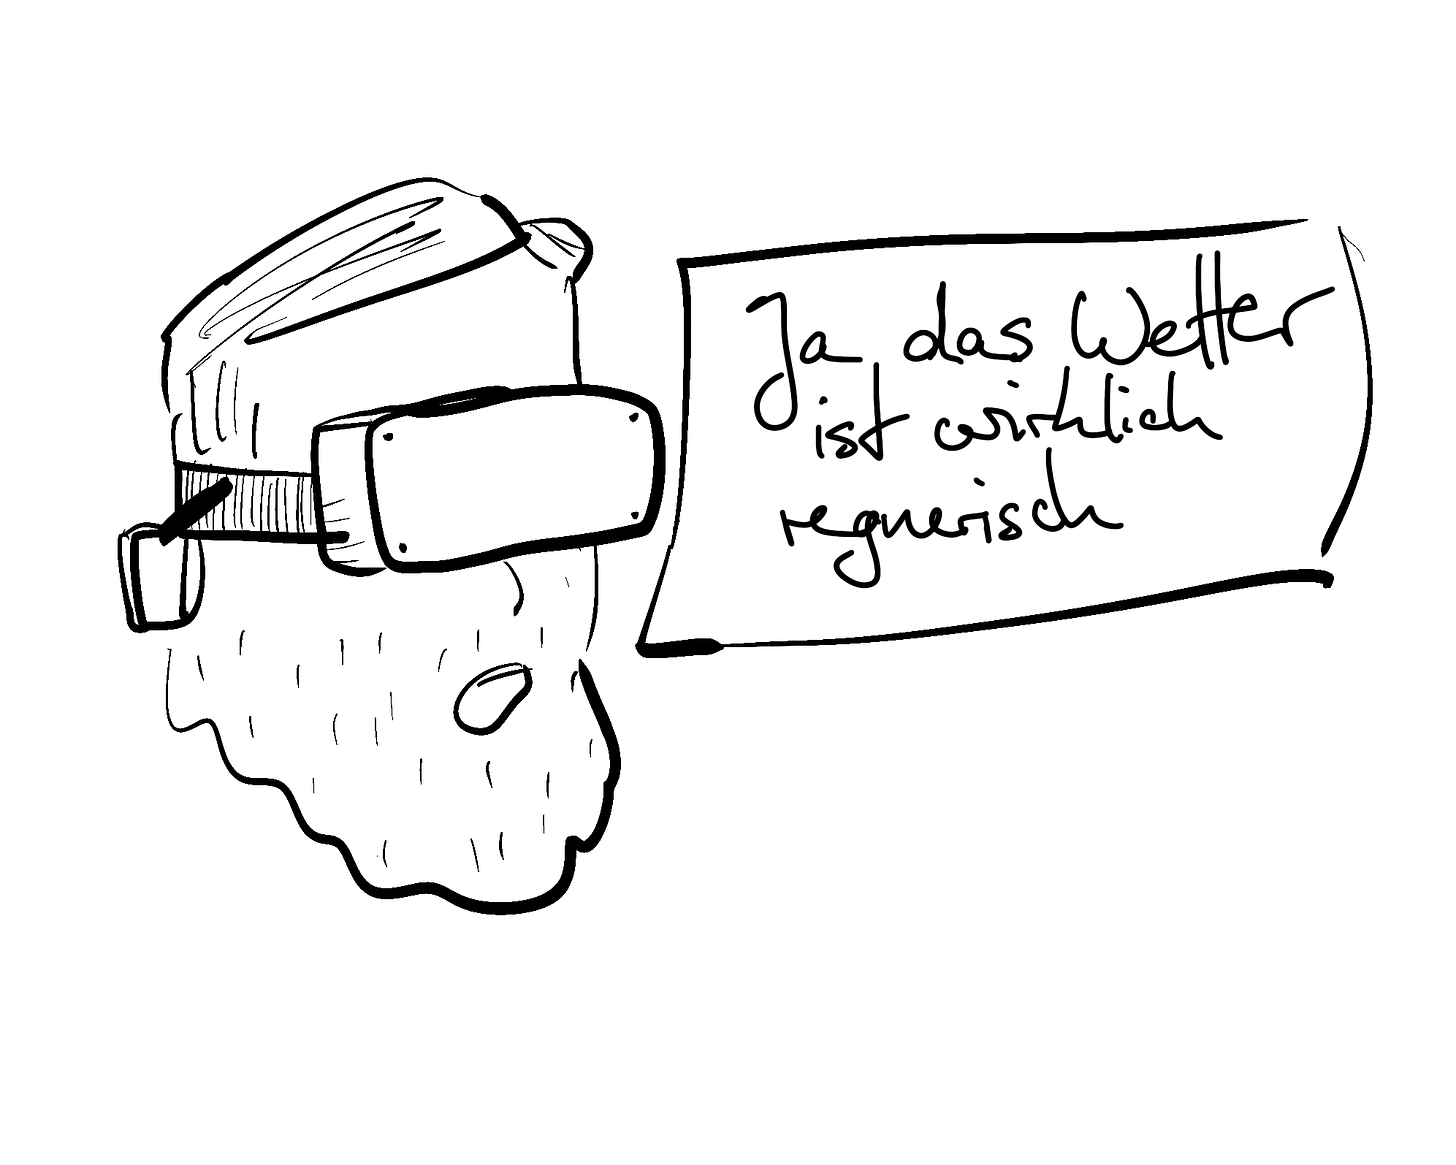 Joram mit VR Brille der sagt: "Ja das Wetter ist wirklcih regnerisch"